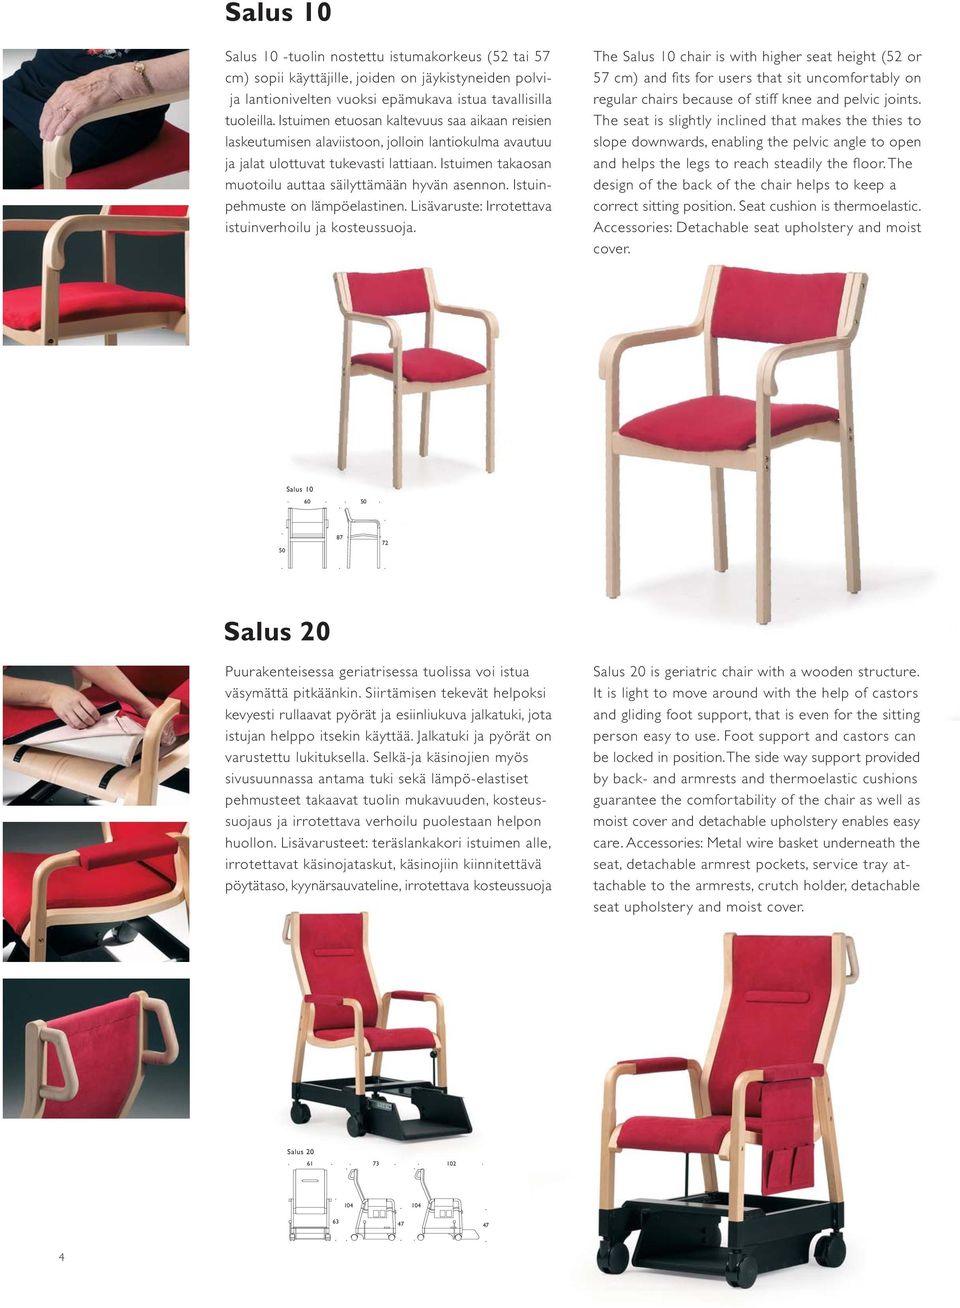 Istuimen takaosan muotoilu auttaa säilyttämään hyvän asennon. Istuinpehmuste on lämpöelastinen. Lisävaruste: Irrotettava istuinverhoilu ja kosteussuoja.